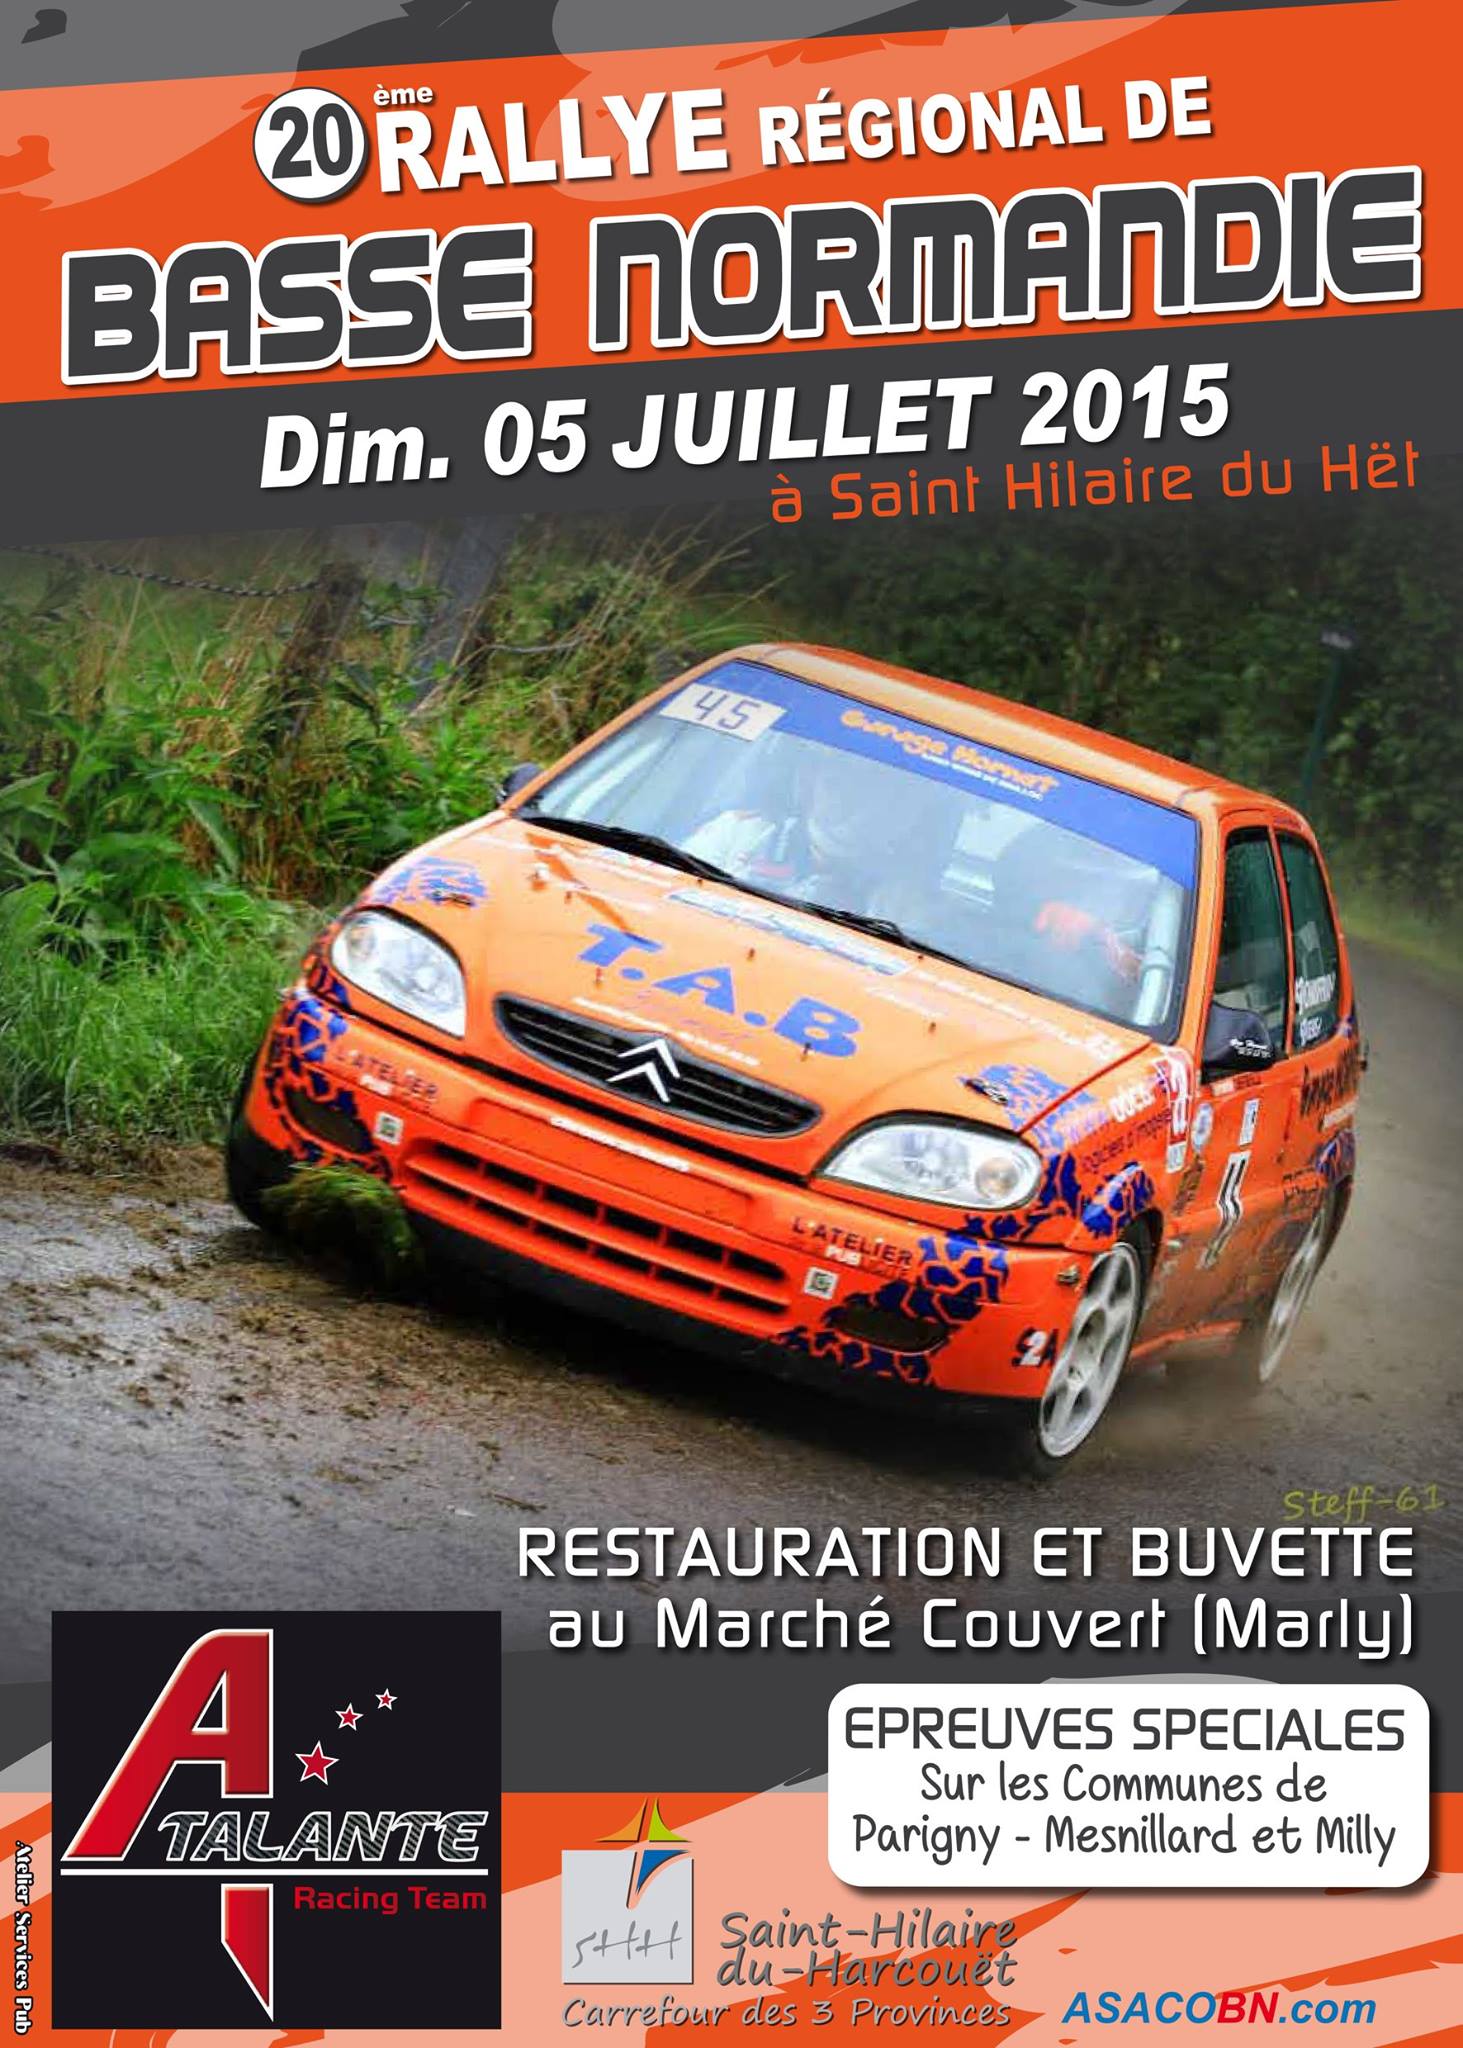 Rallye-Basse-Normandie-2015.jpg